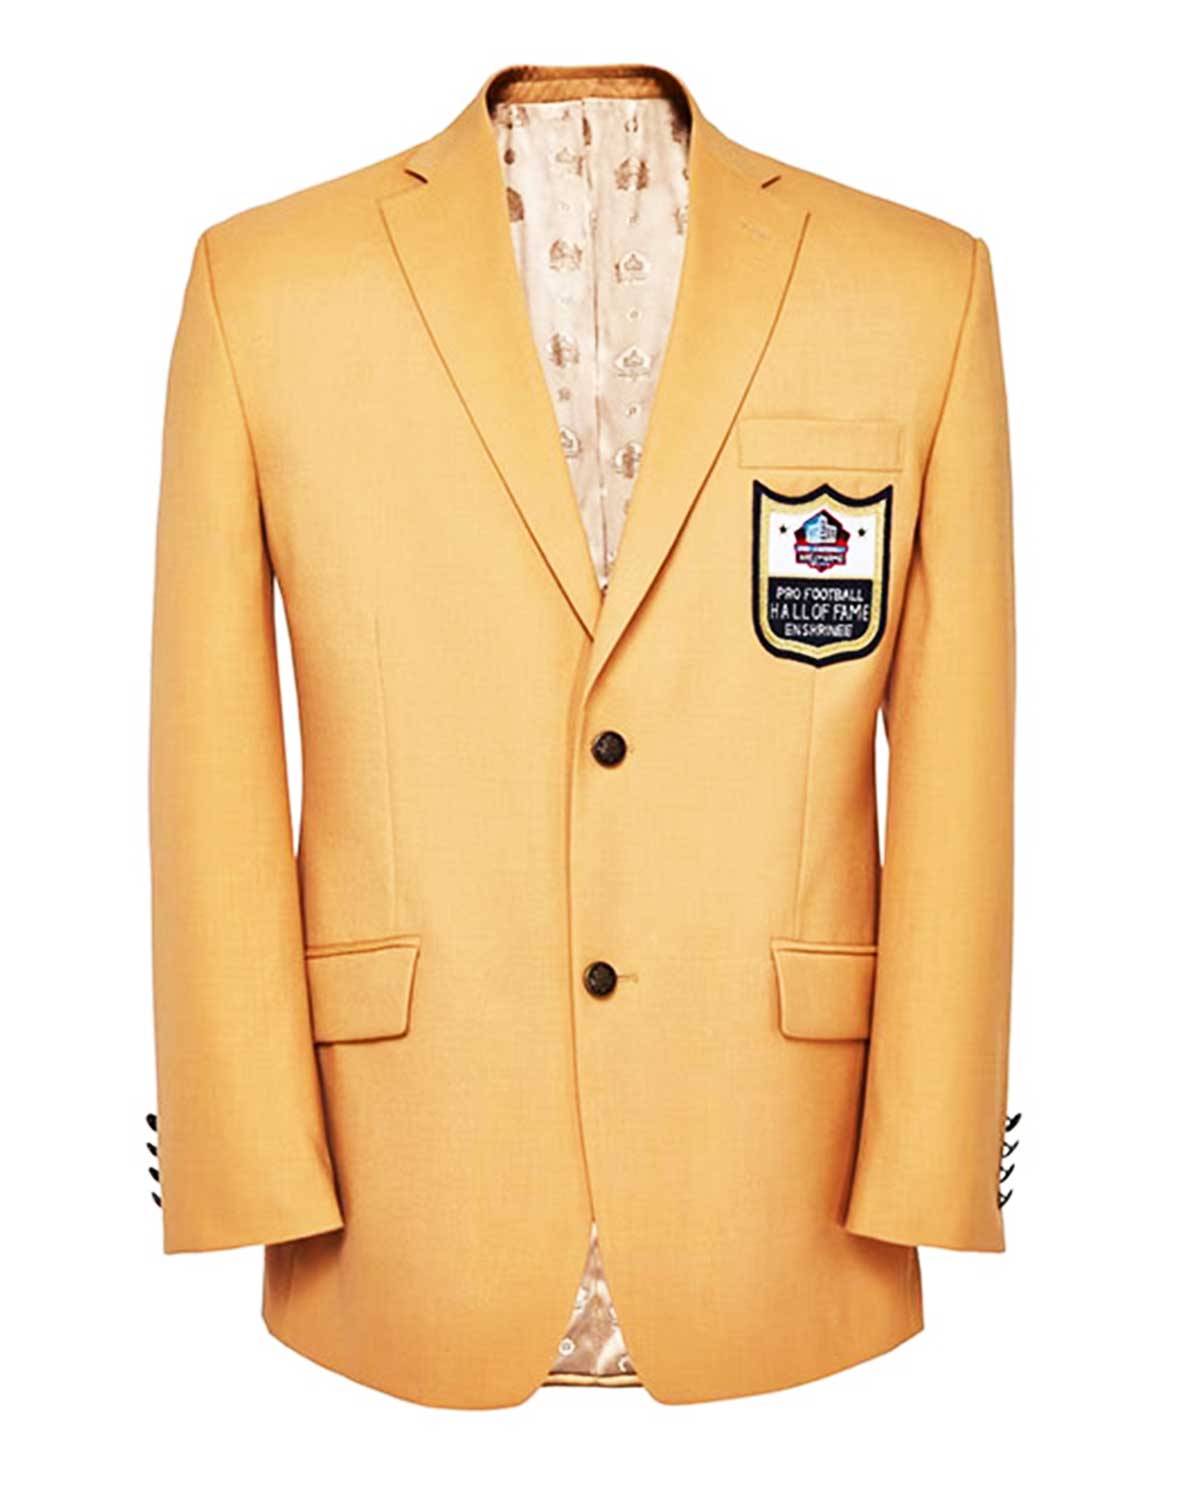 Mens NFL Pro Football Hall Of Fame Gold Jacket | Elite Jacket